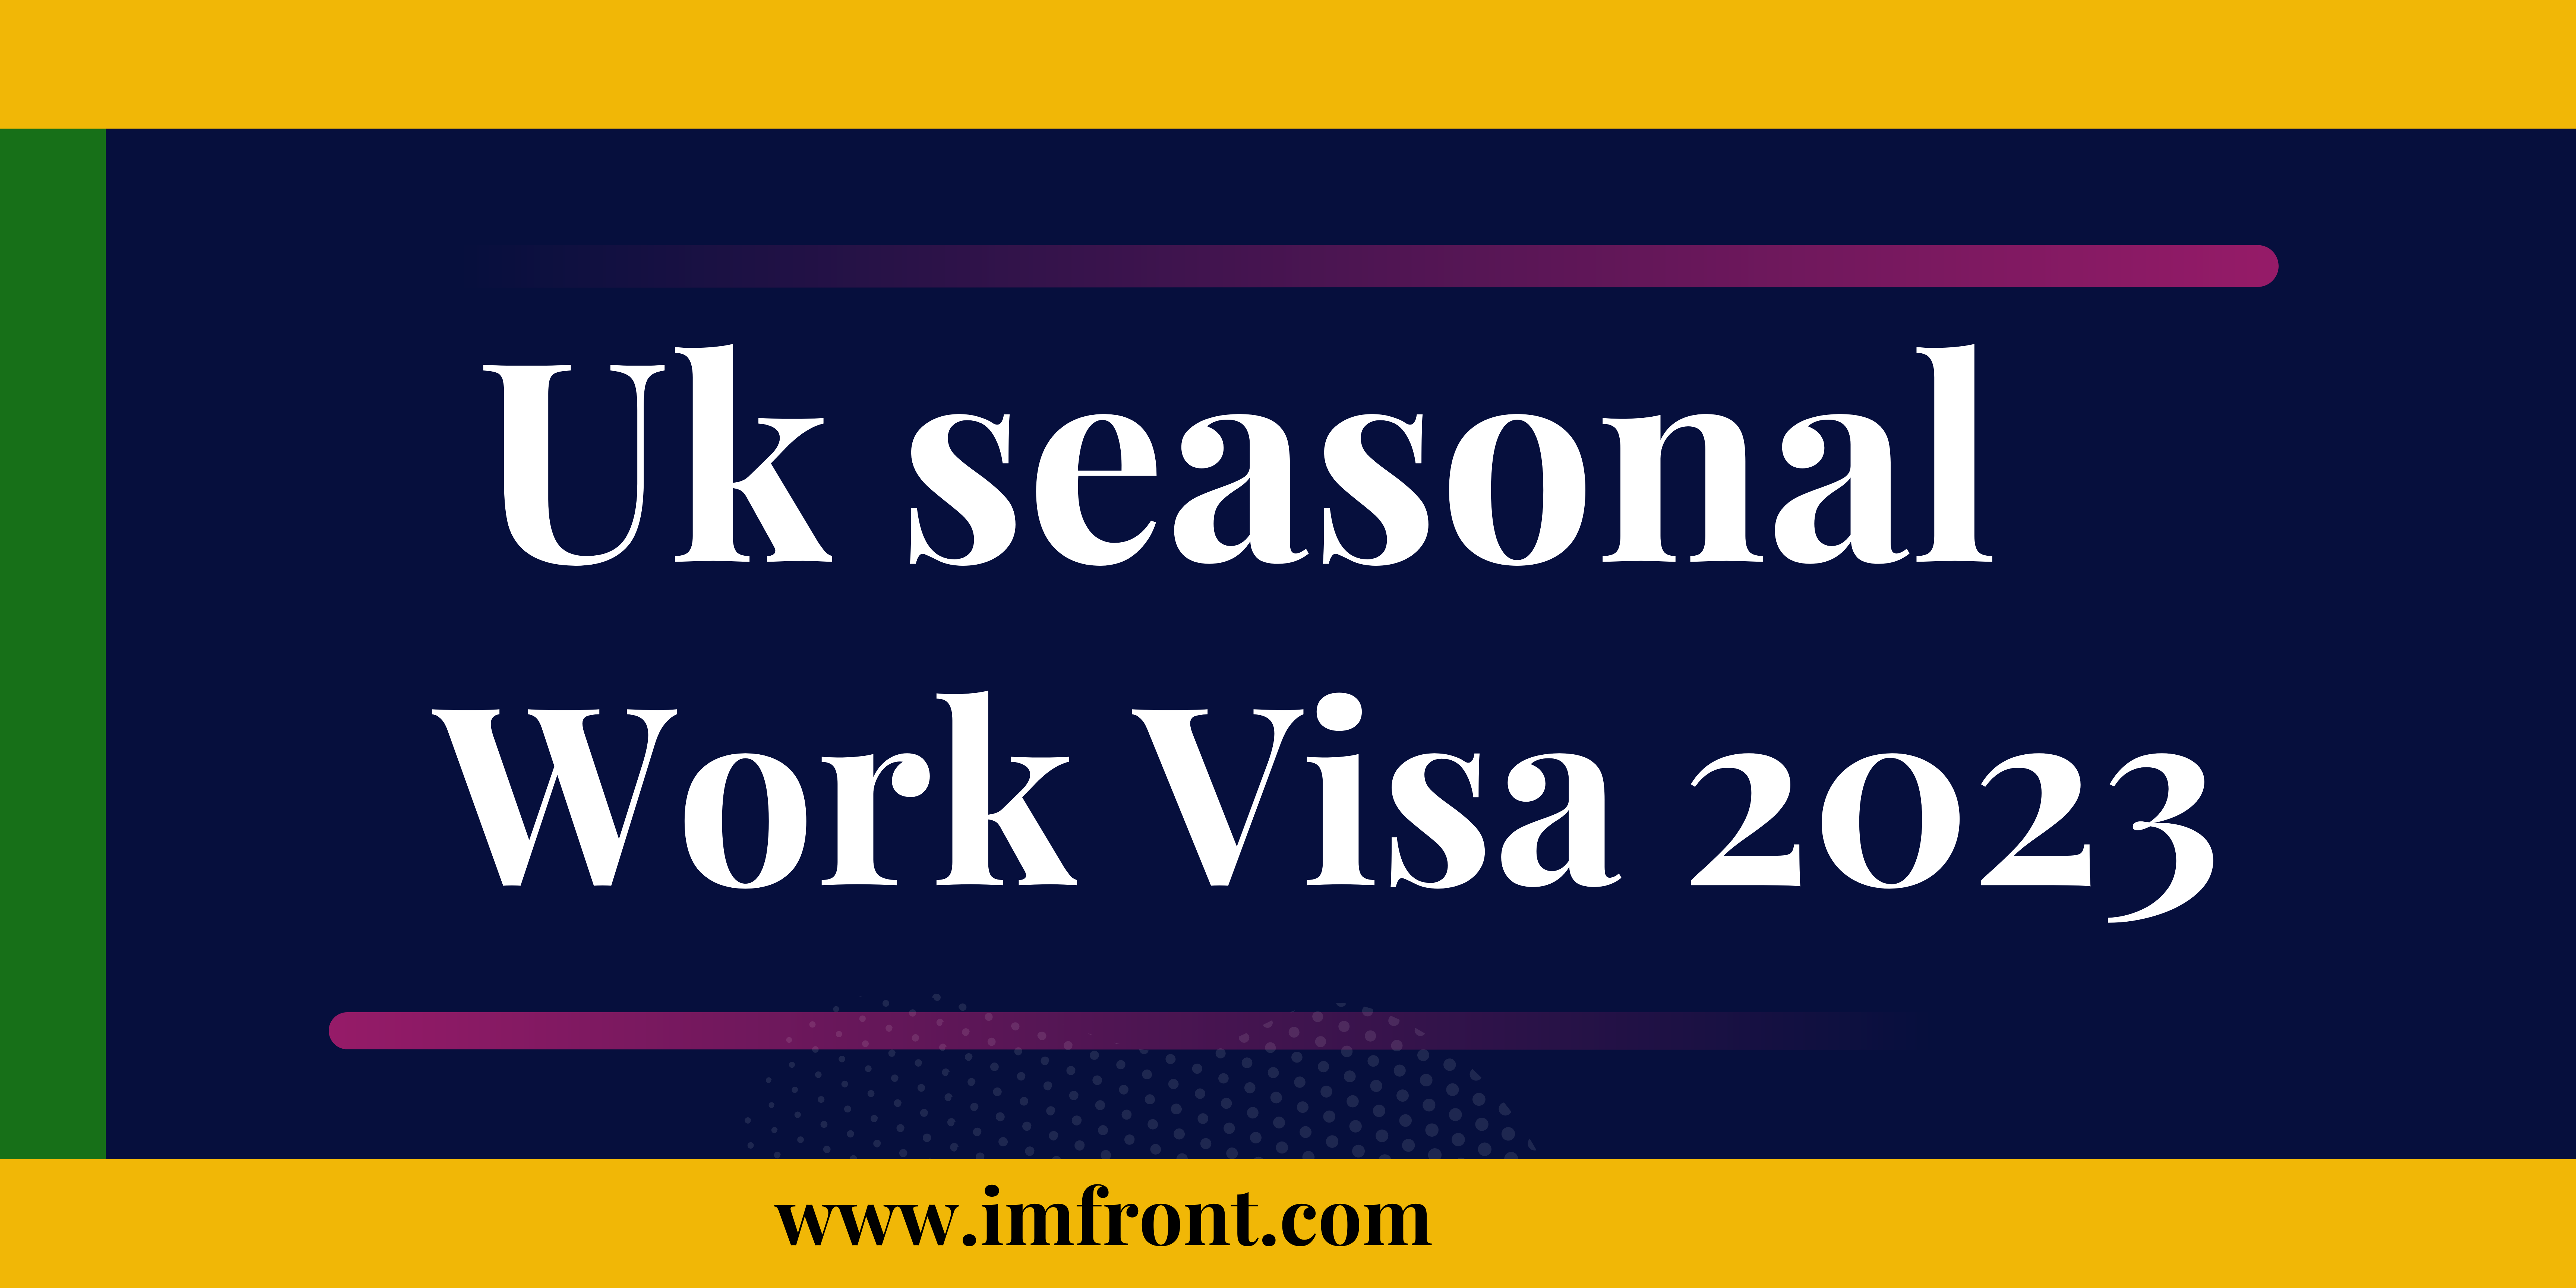 uk seasonal best work visa 2023